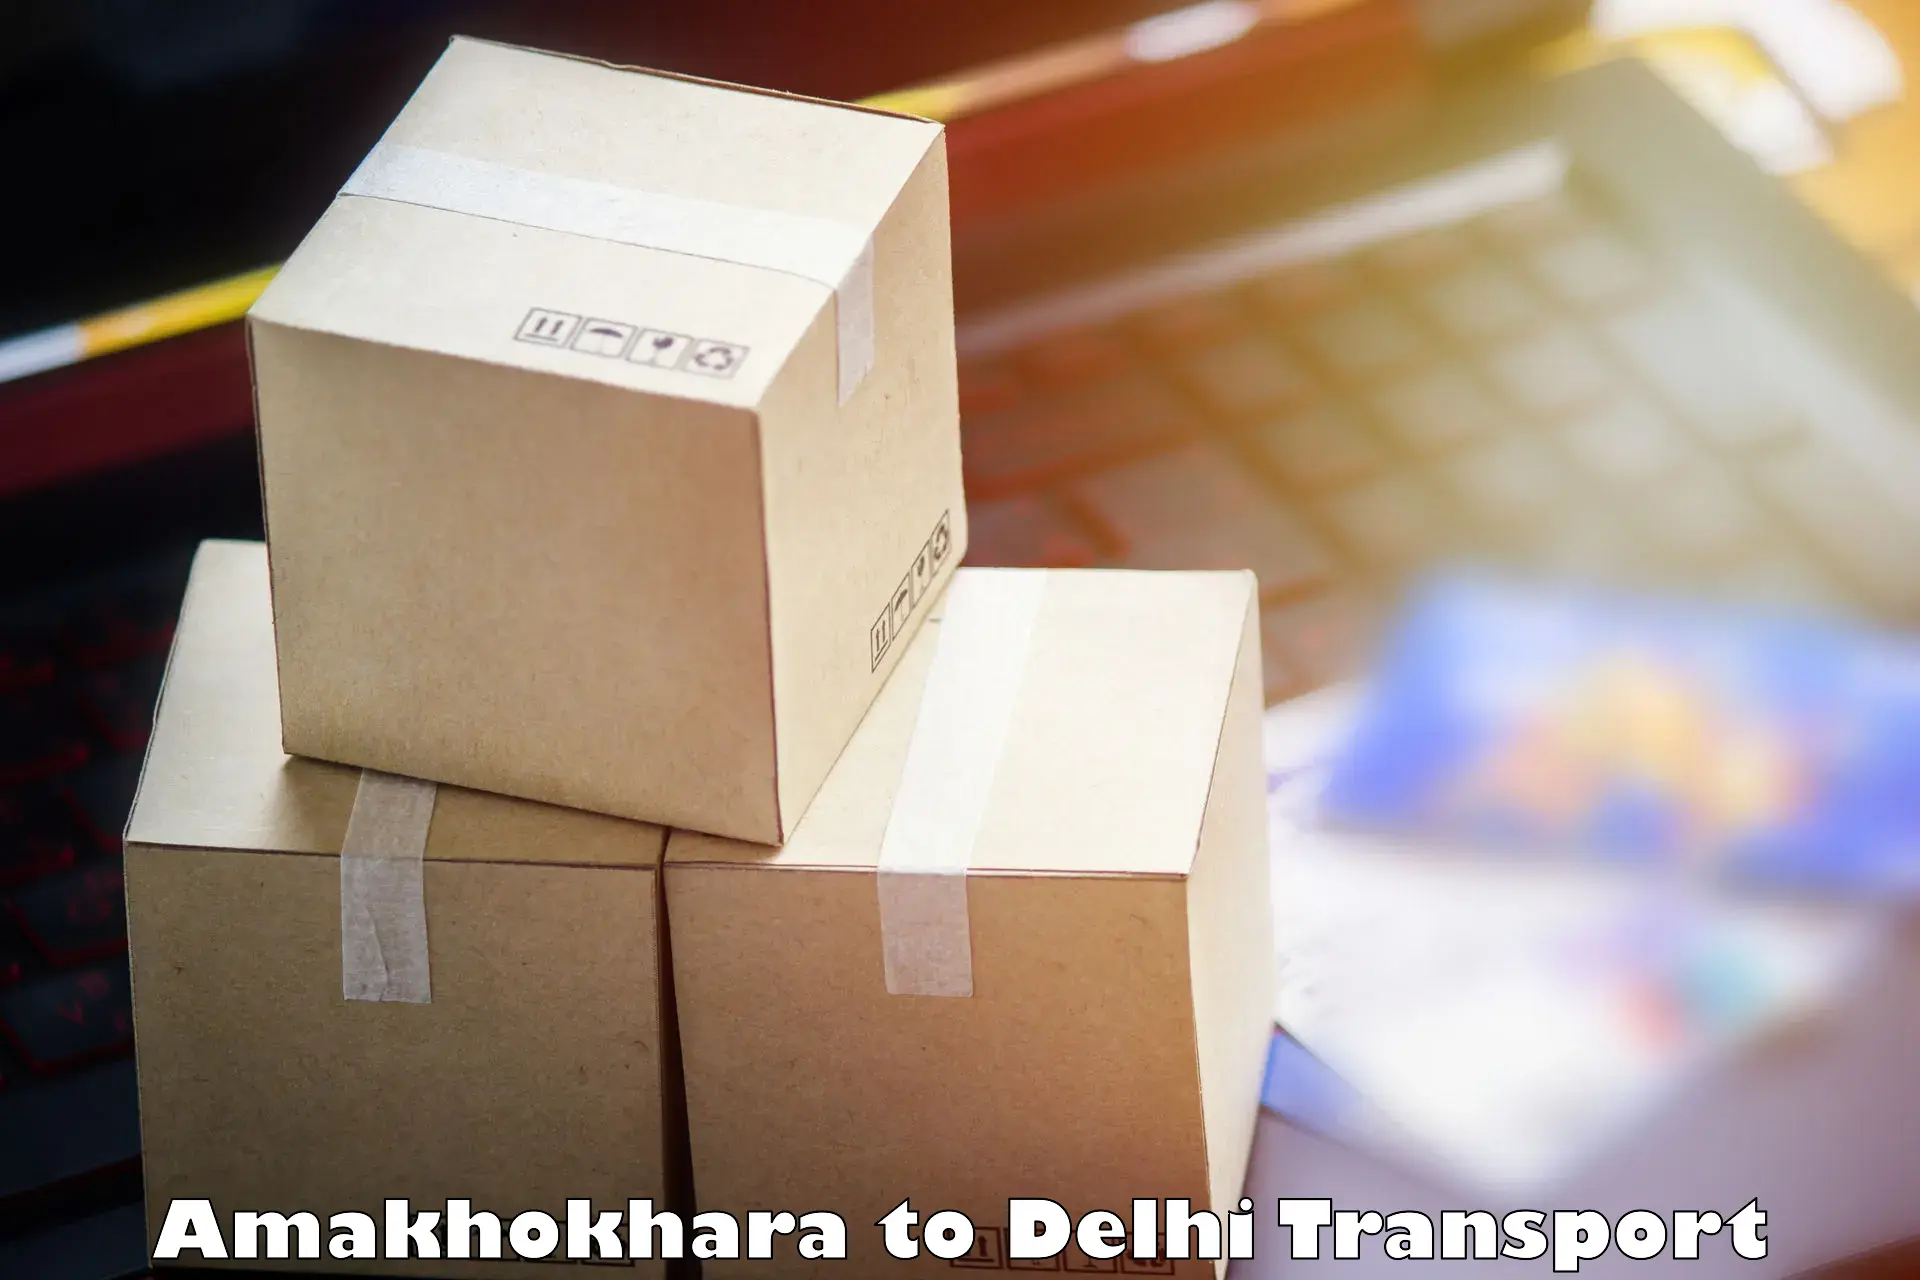 Luggage transport services Amakhokhara to NCR